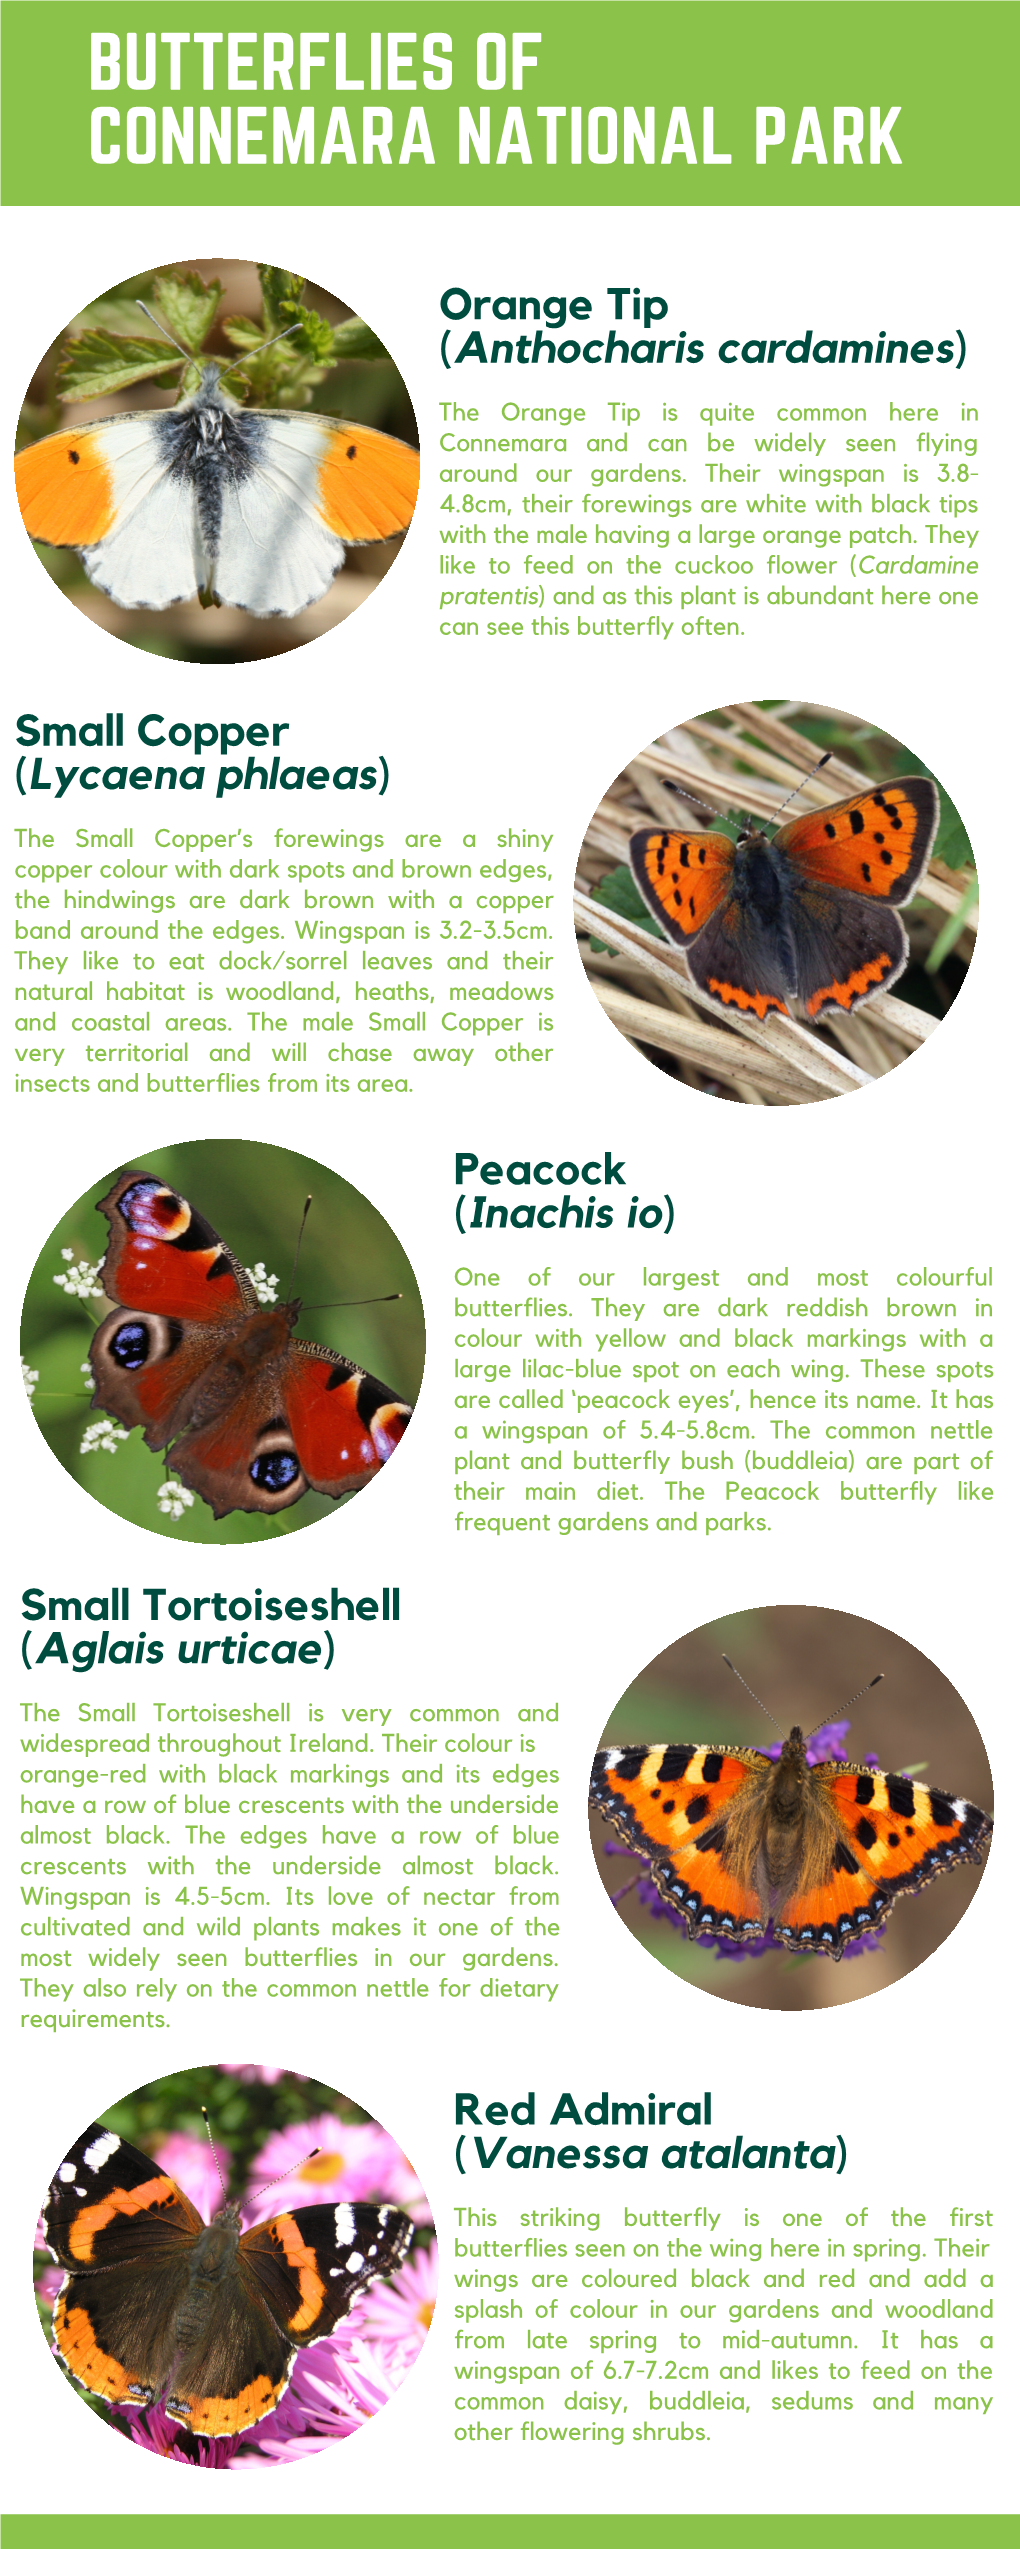 Butterflies of Connemara National Park